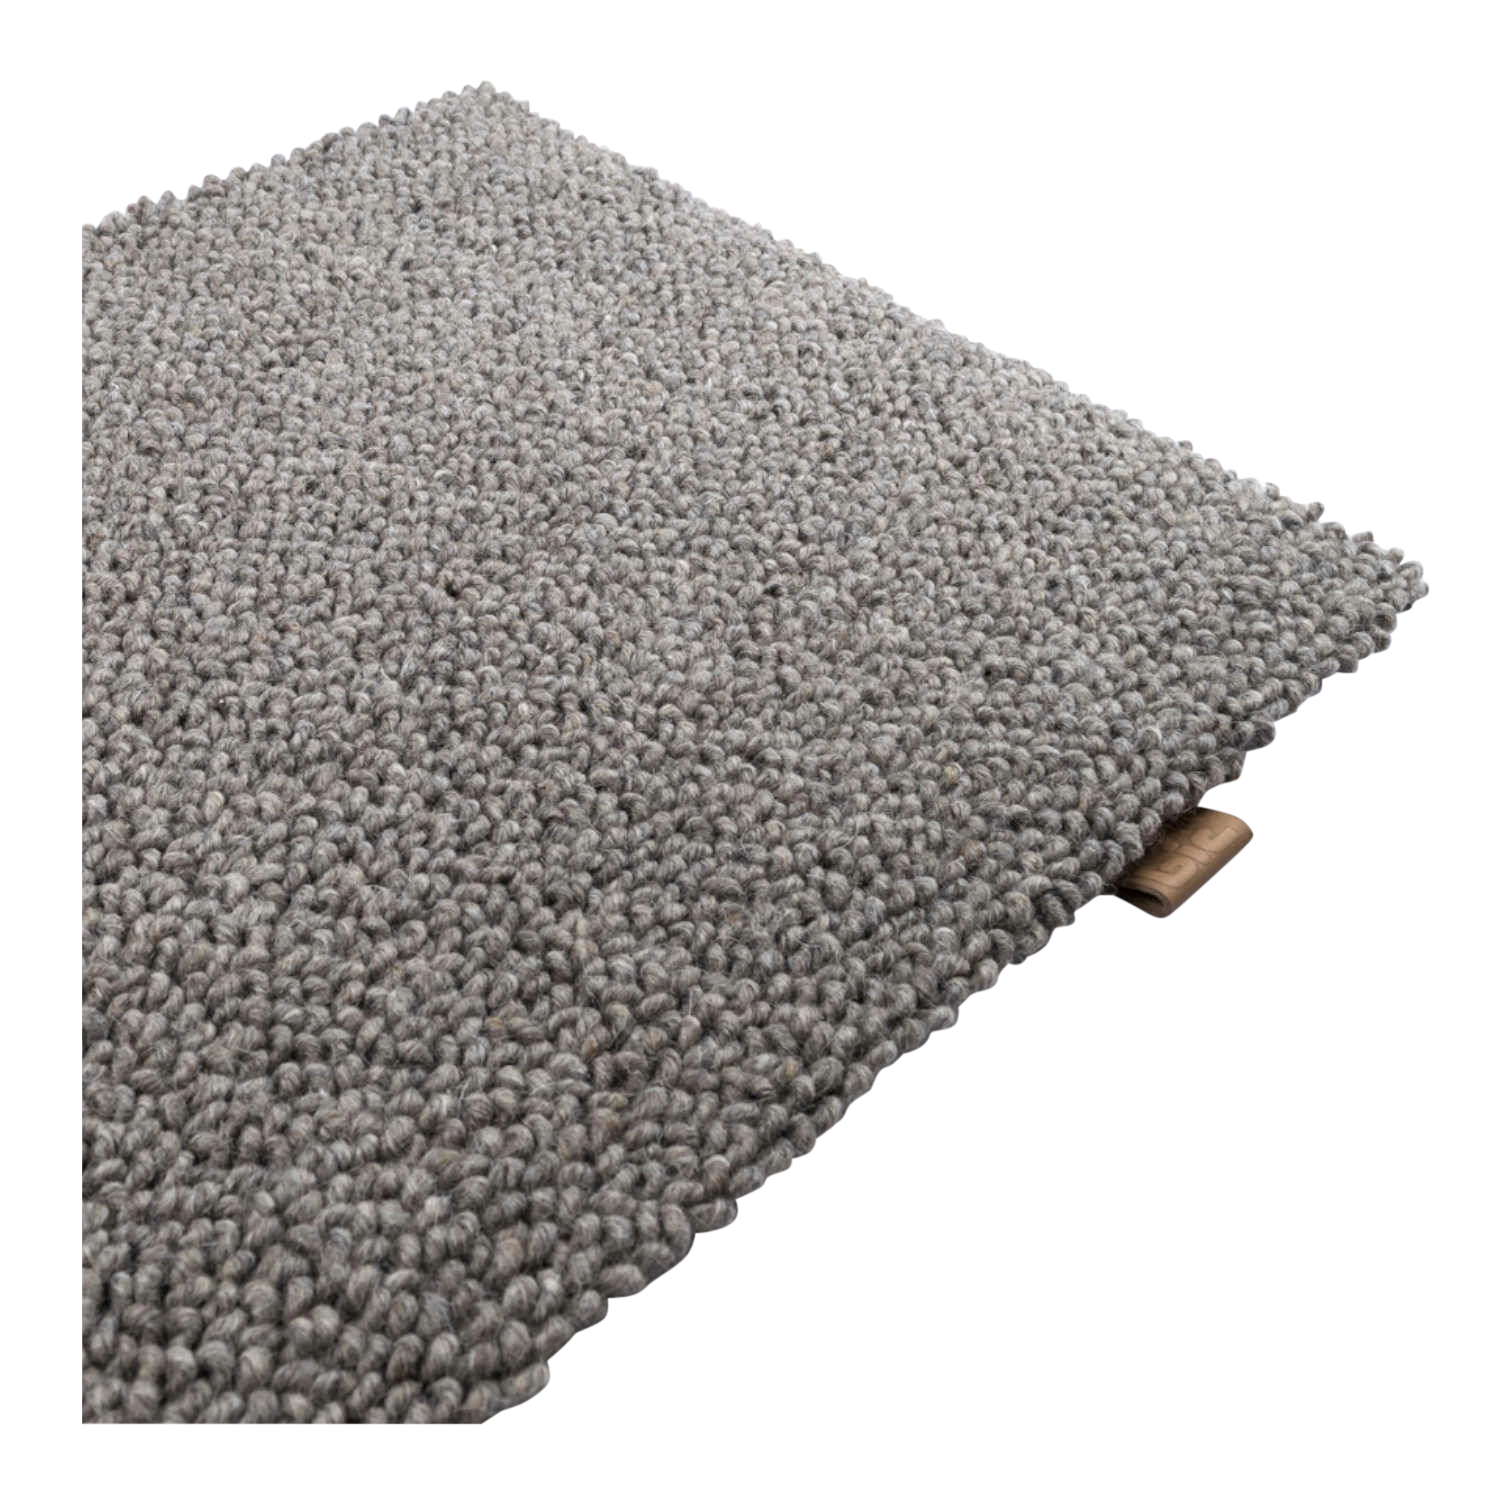 Chelha Teppich, Farbe 1406 grey, Grösse 200 x 250cm von B.I.C Carpets